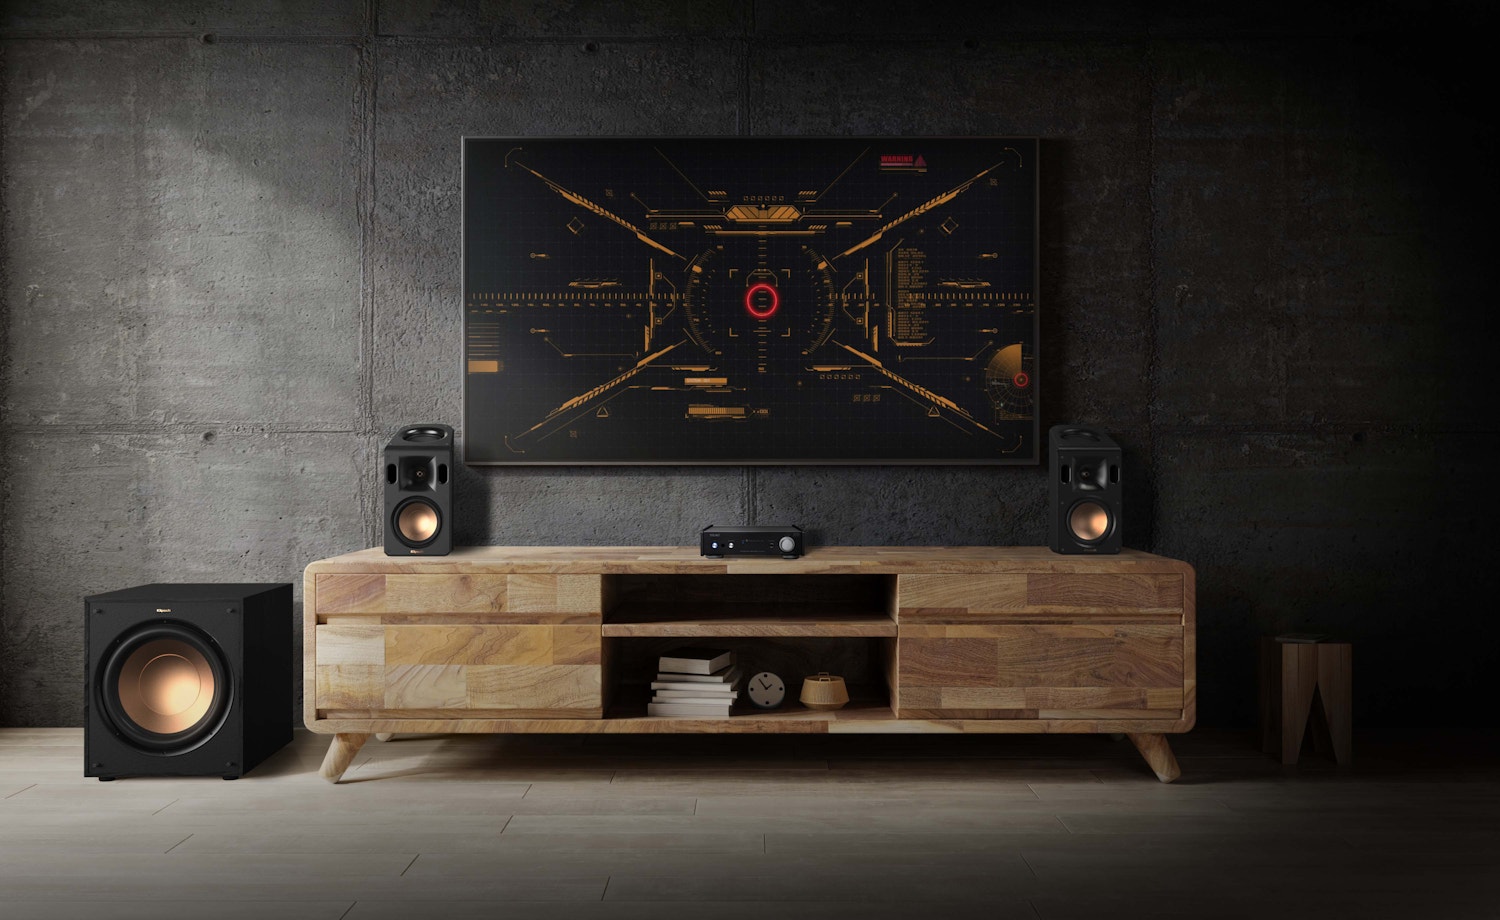 AI 301 DA X in livingroom below tv between speakers in dark room